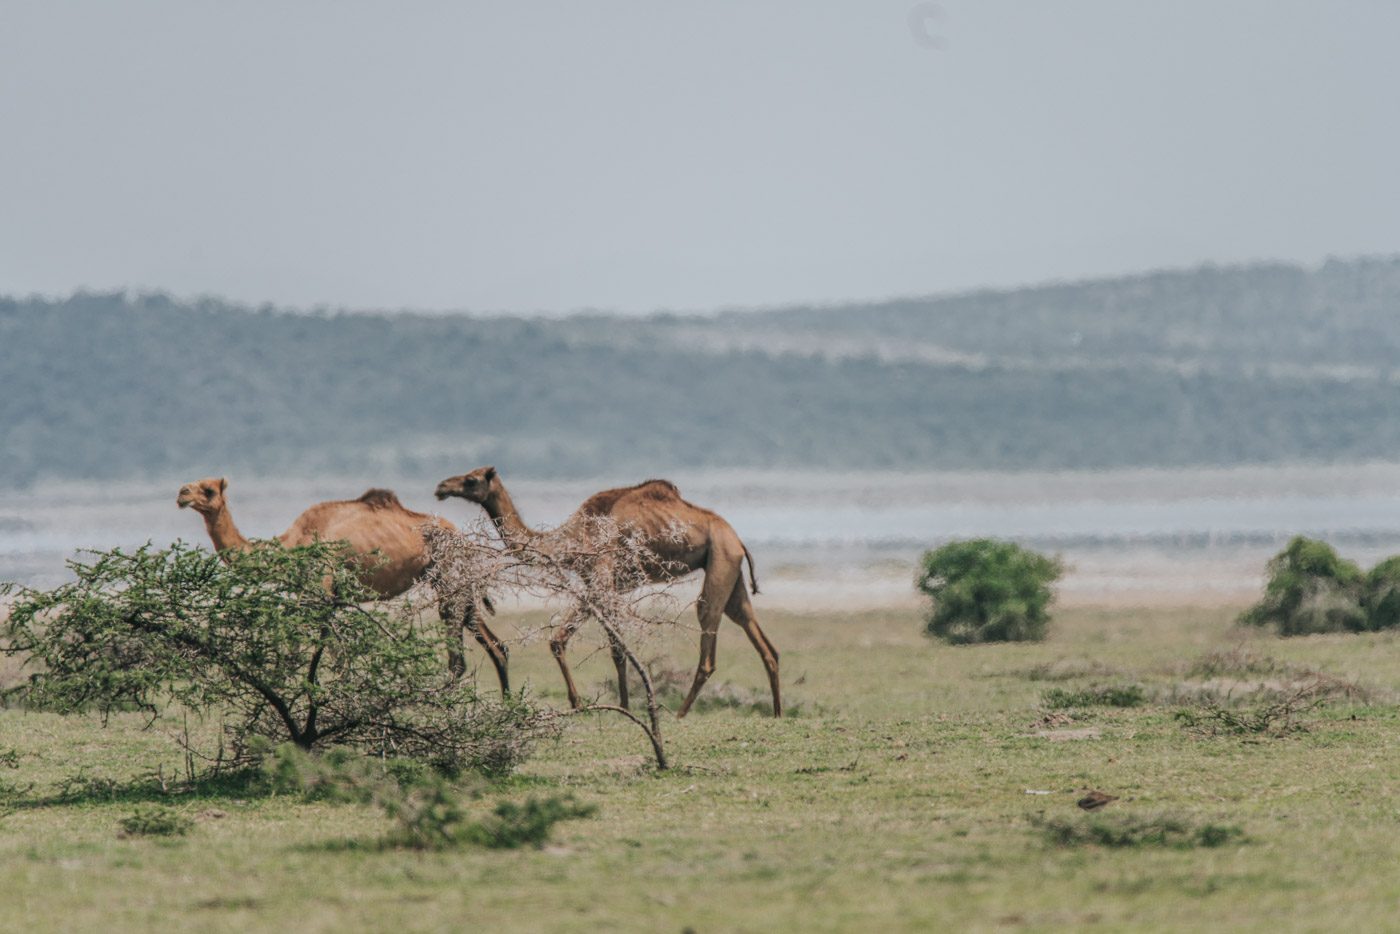 骆驼在湖上漫步。埃塞俄比亚可能有点奇怪!